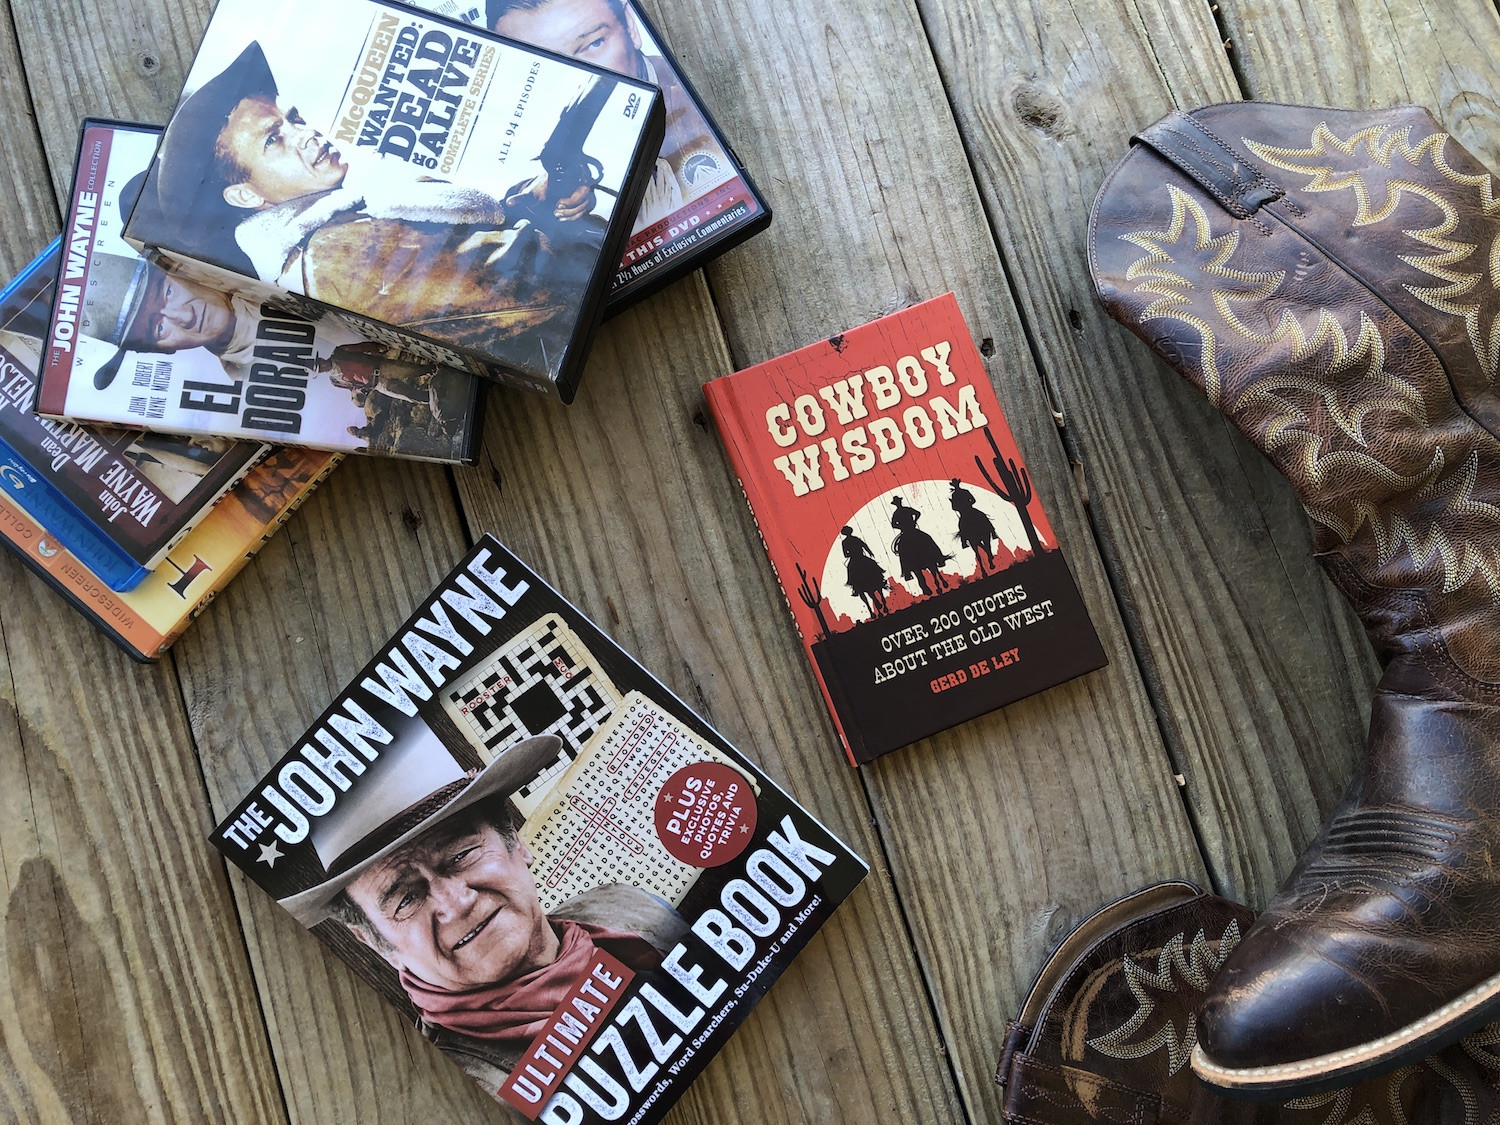 Gift Ideas For Cowboys
 Gift Ideas for Cowboy Fans Hobbies on a Bud